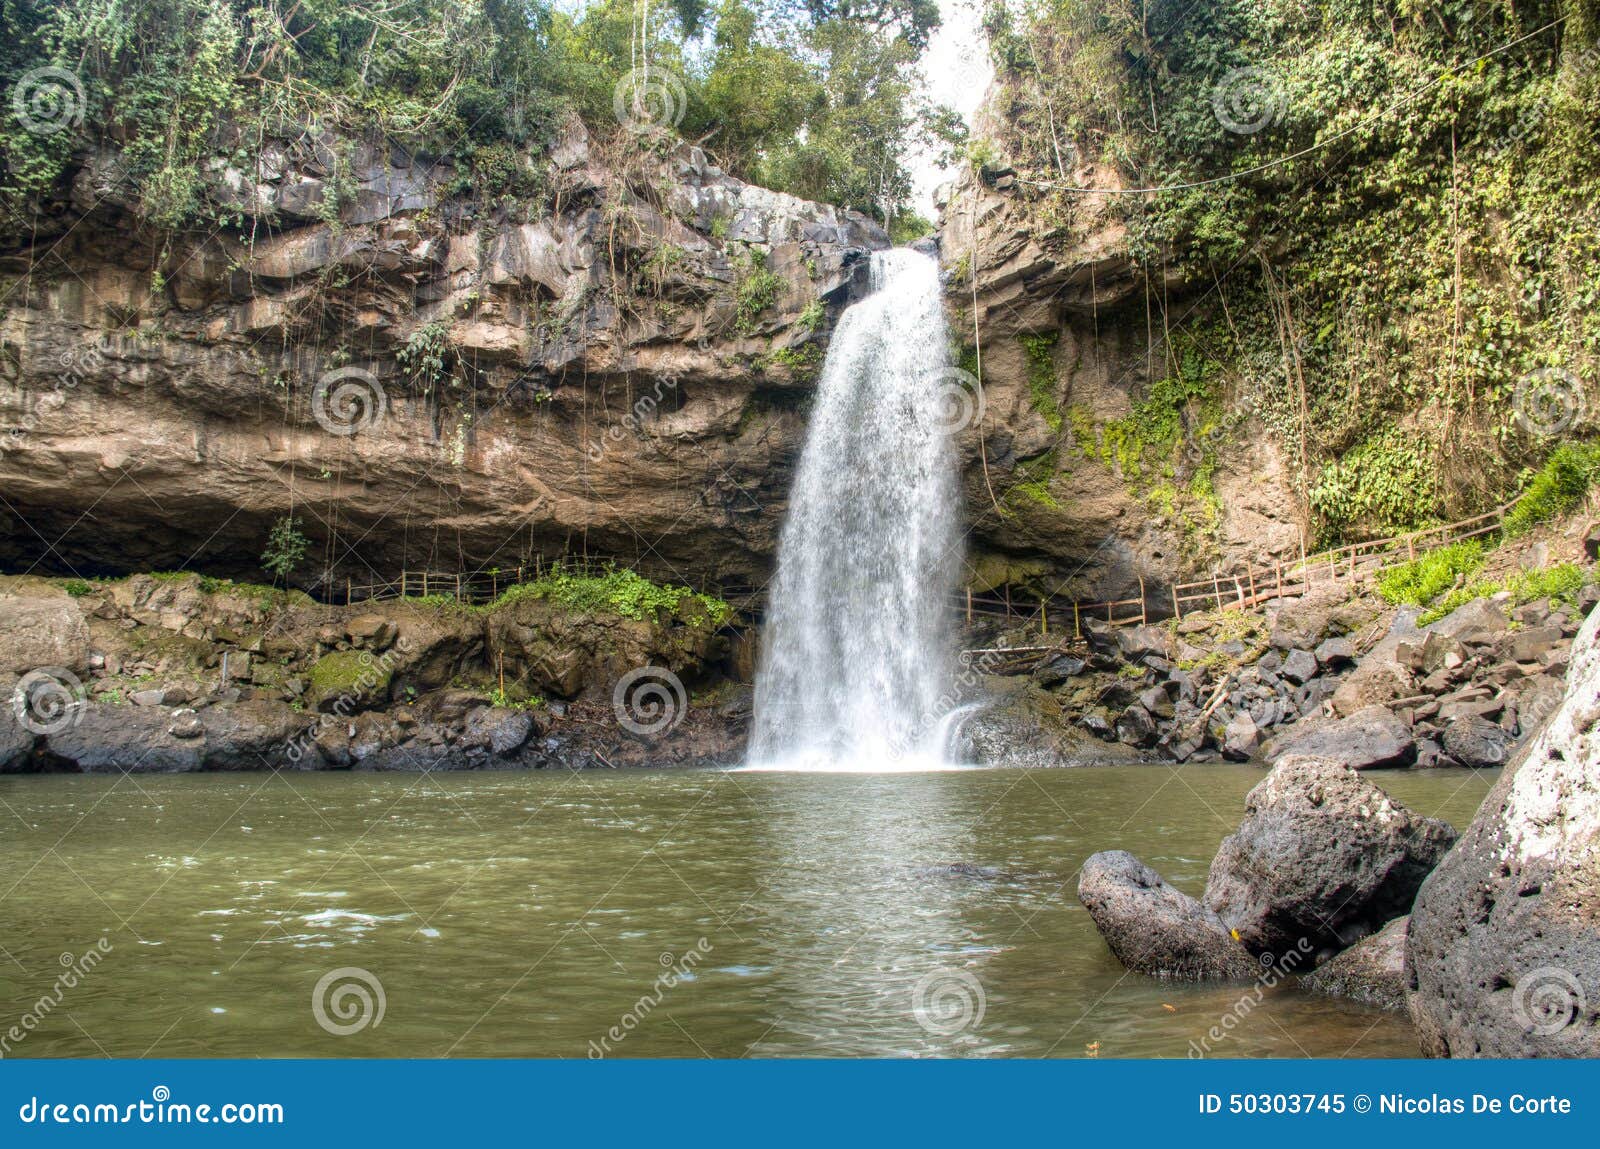 cascada blanca waterfall near matagalpa, nicaragua